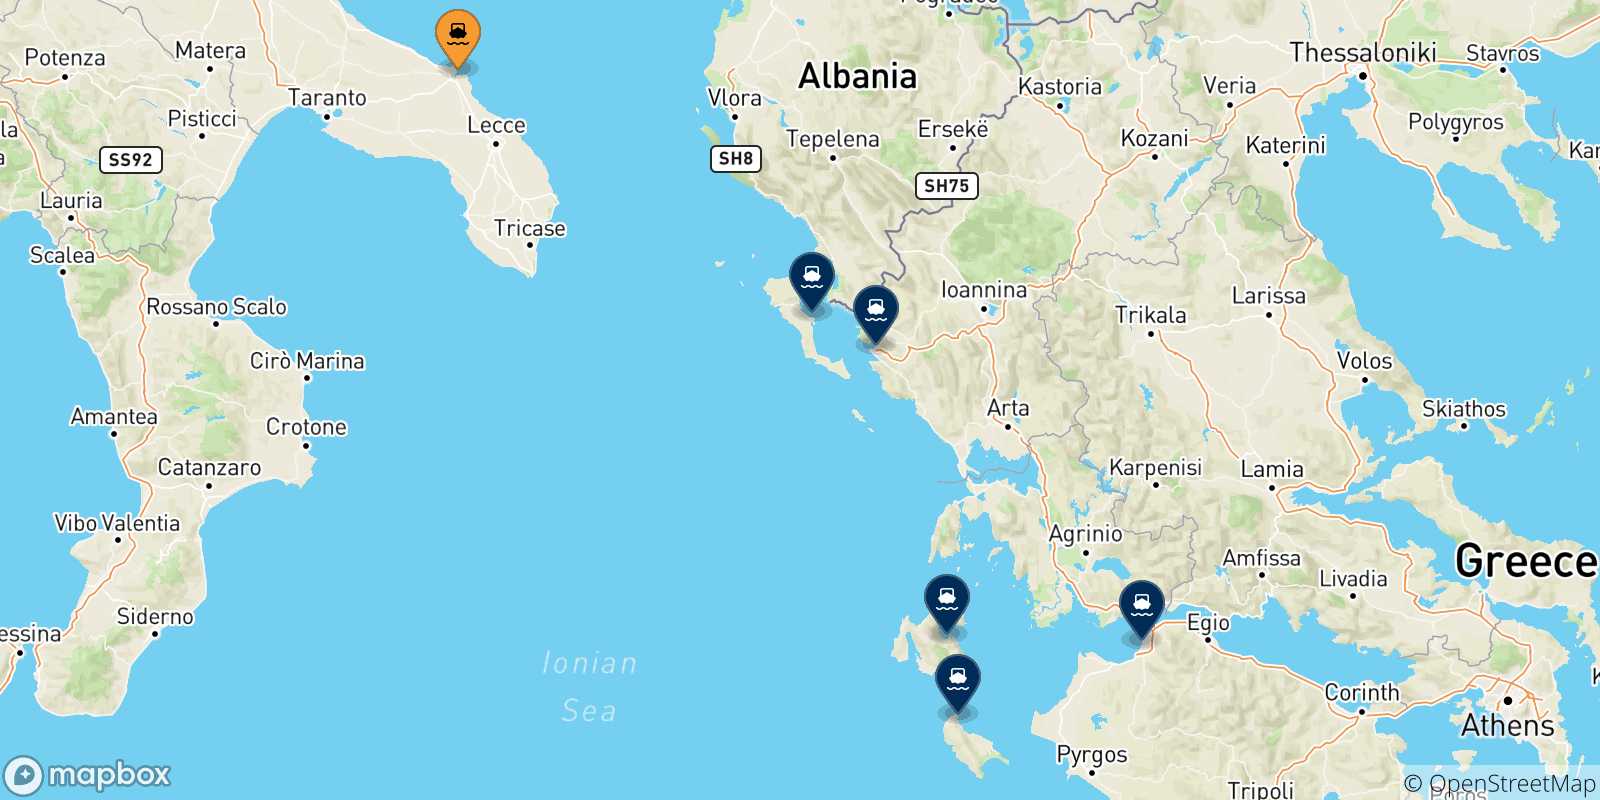 Mappa delle possibili rotte tra Brindisi e la Grecia